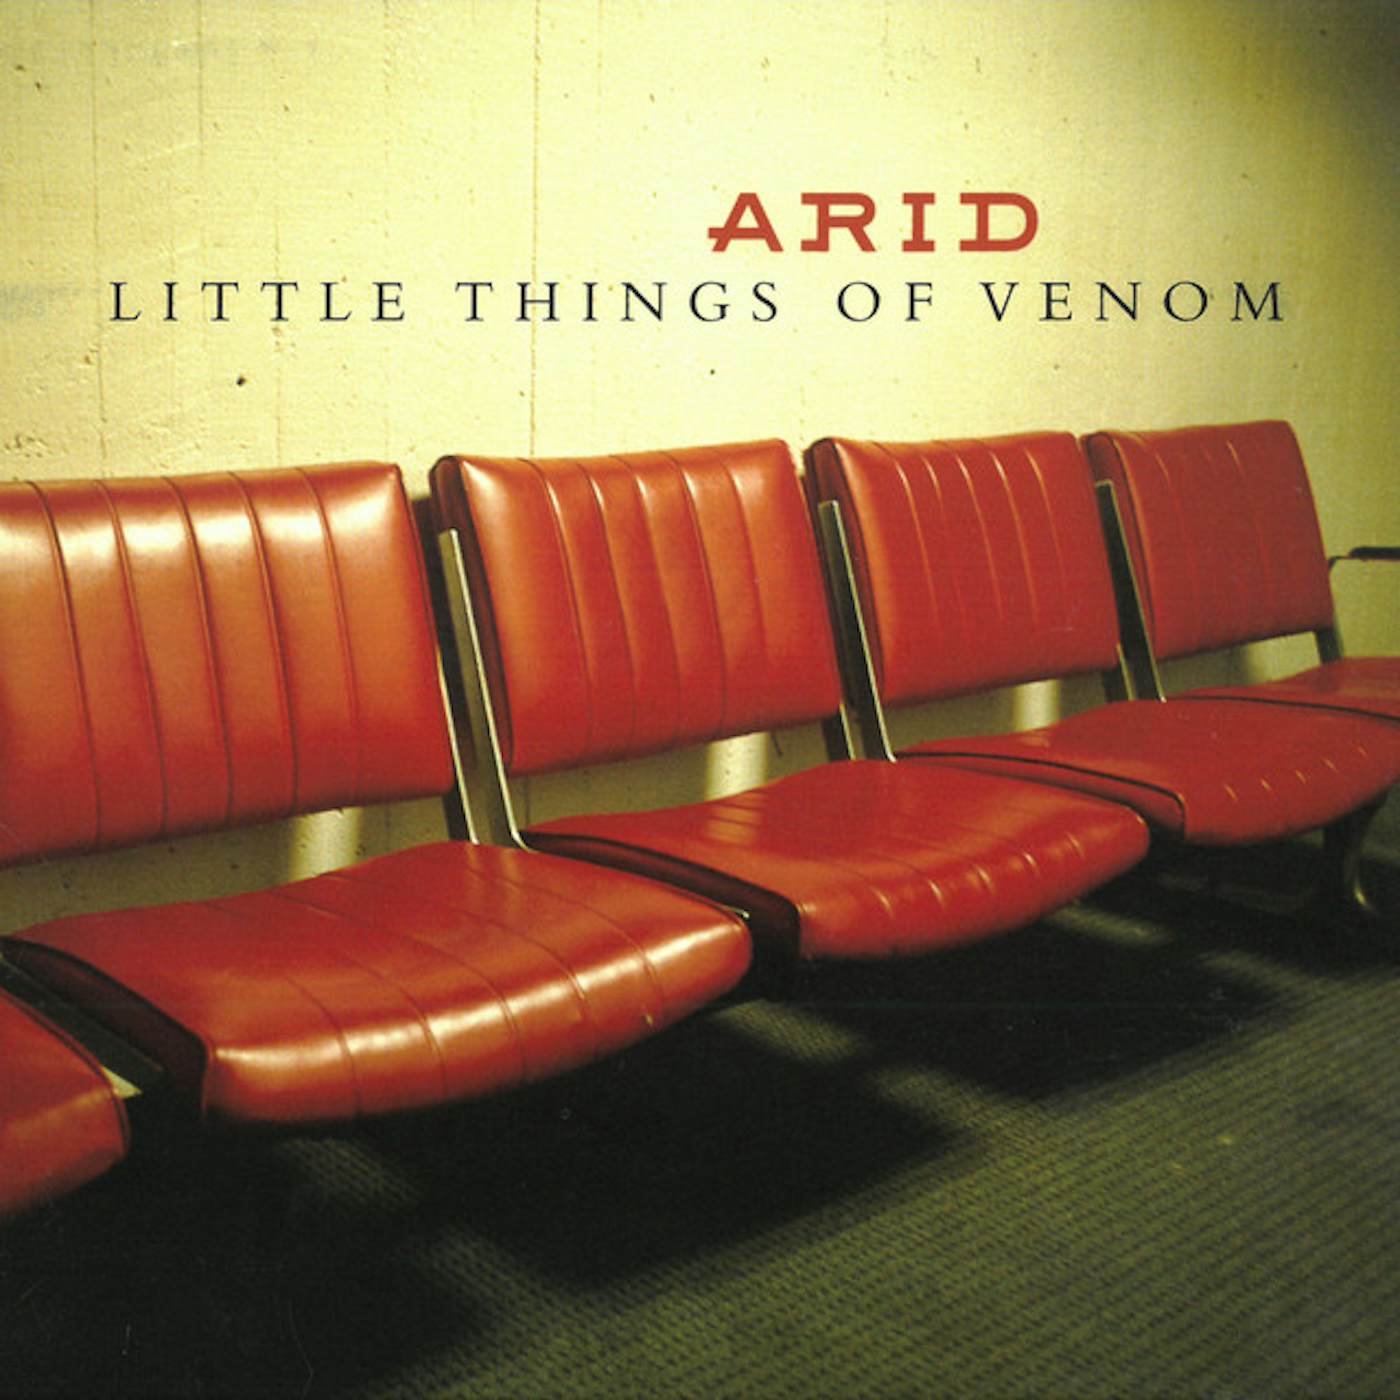 Arid LITTLE THINGS OF VENOM CD